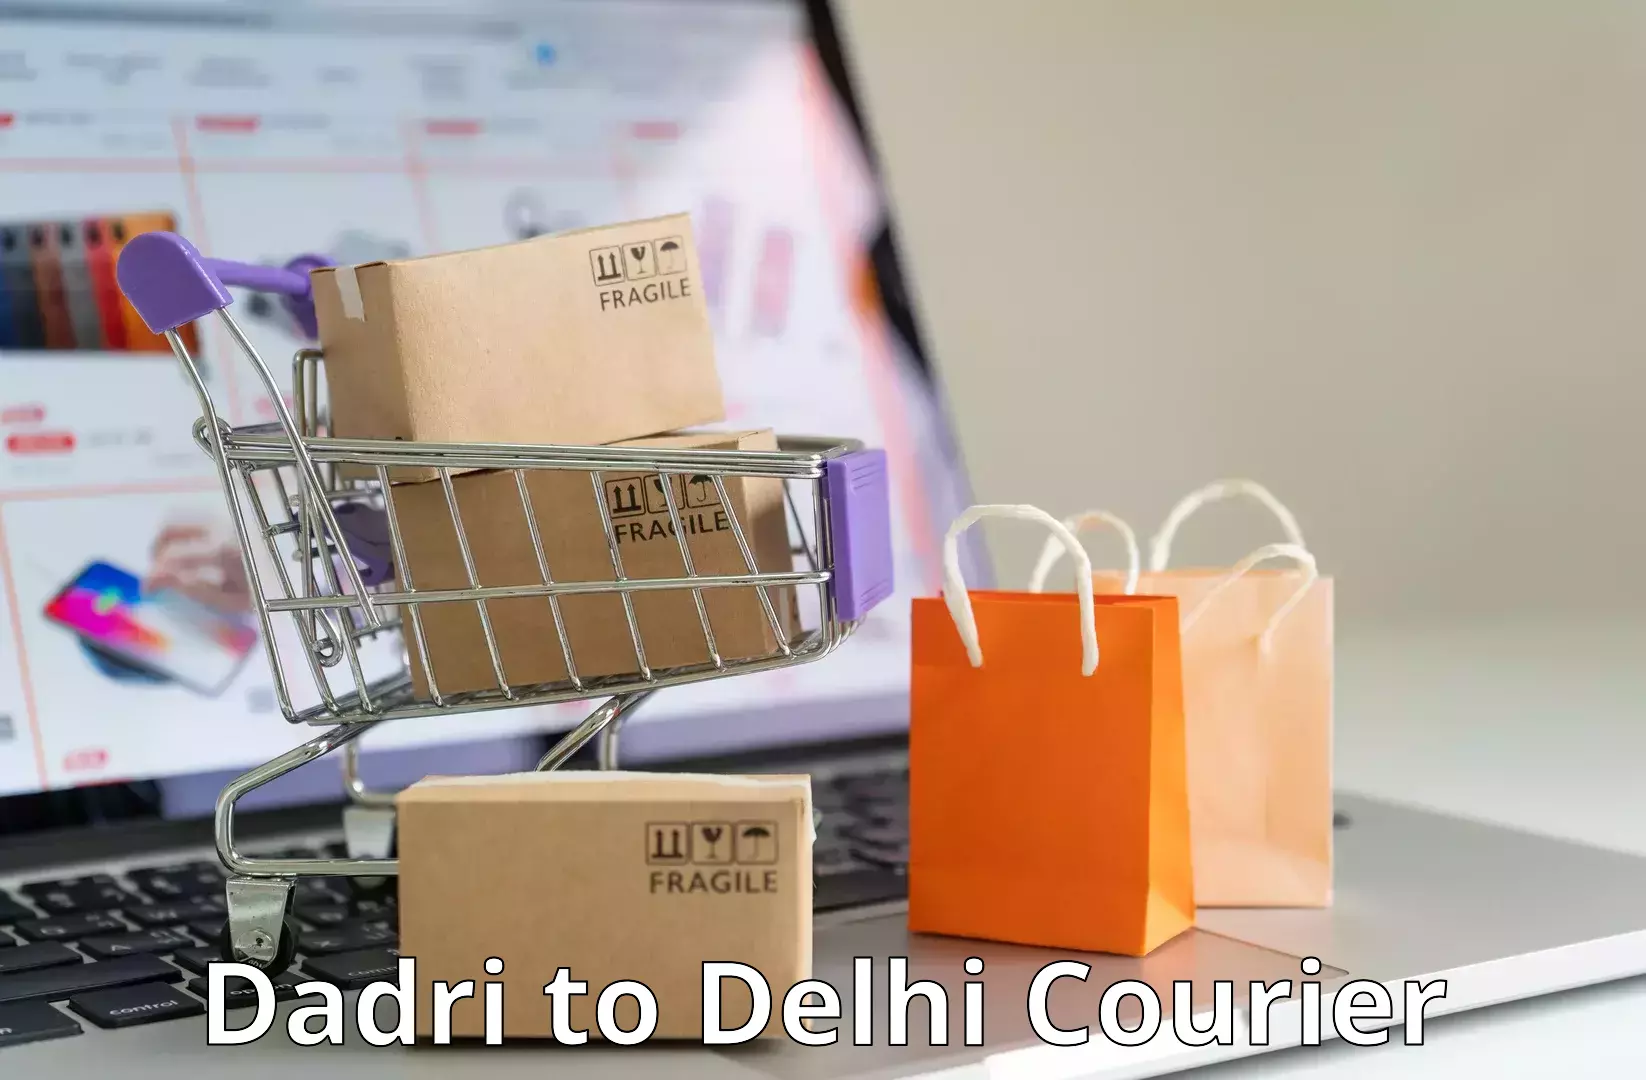 Urban courier service Dadri to Jamia Millia Islamia New Delhi